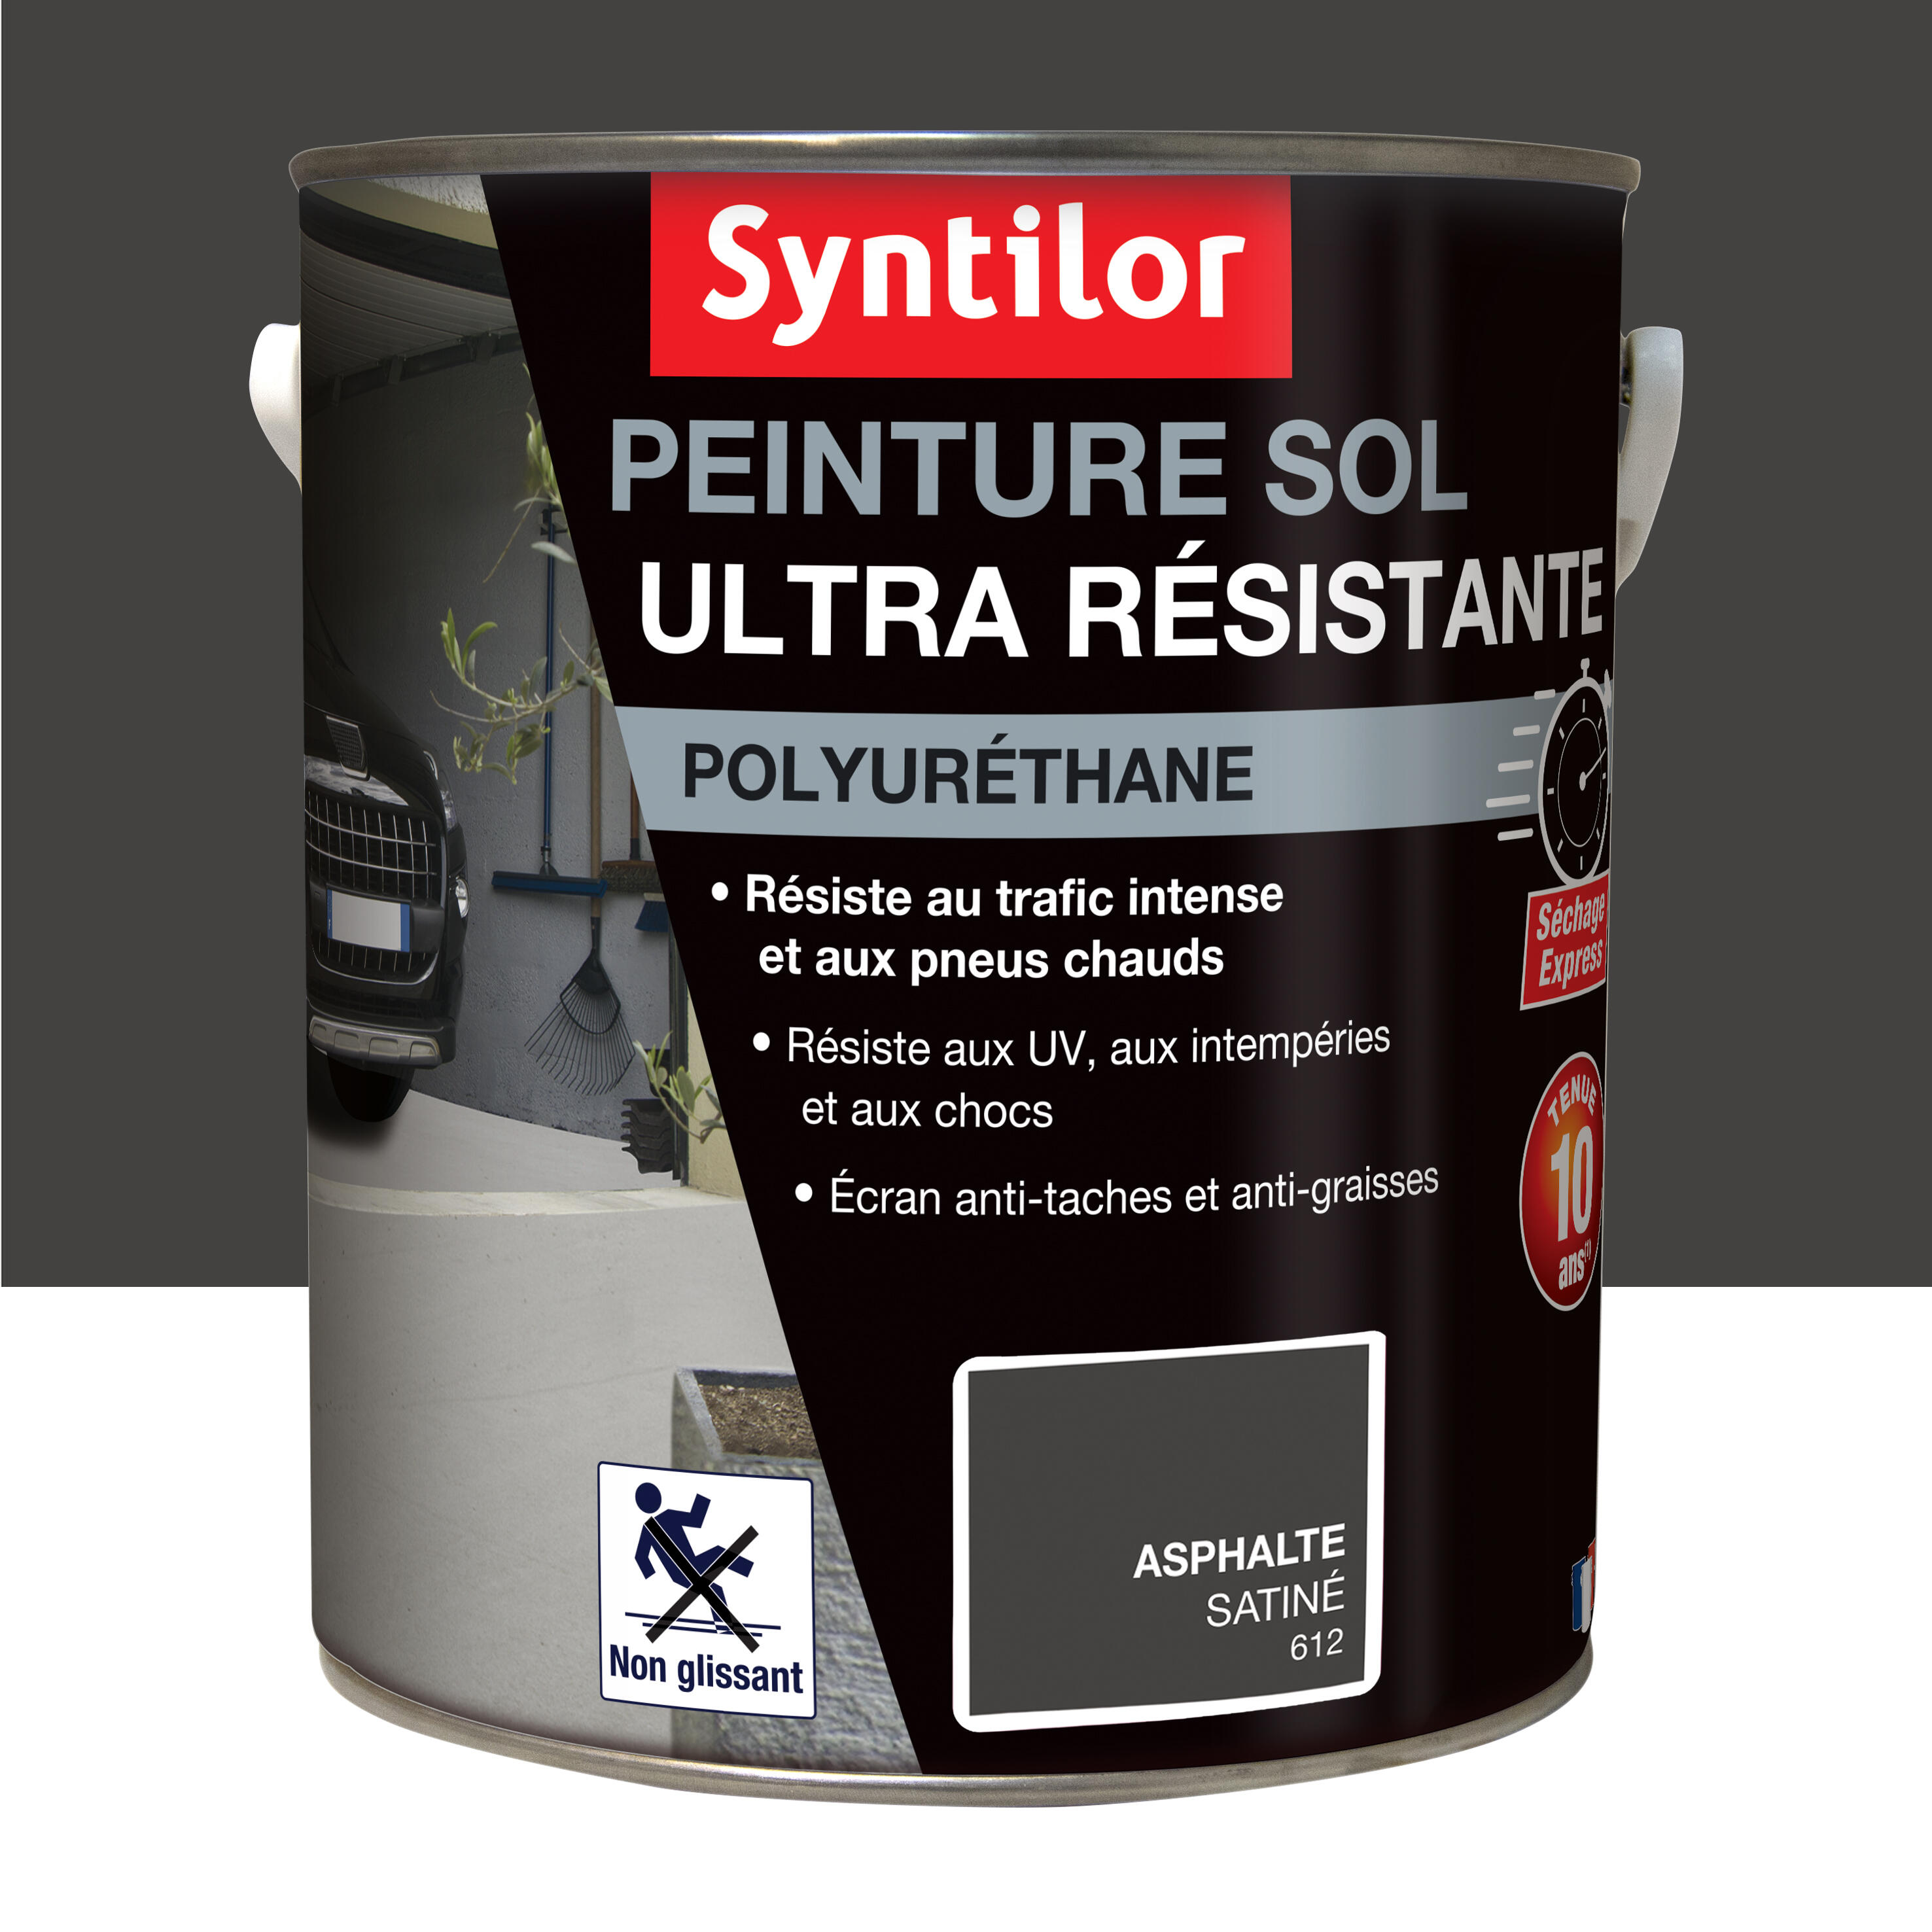 Peinture Sol Ultra Résistante Syntilor: protégez vos sols exposés